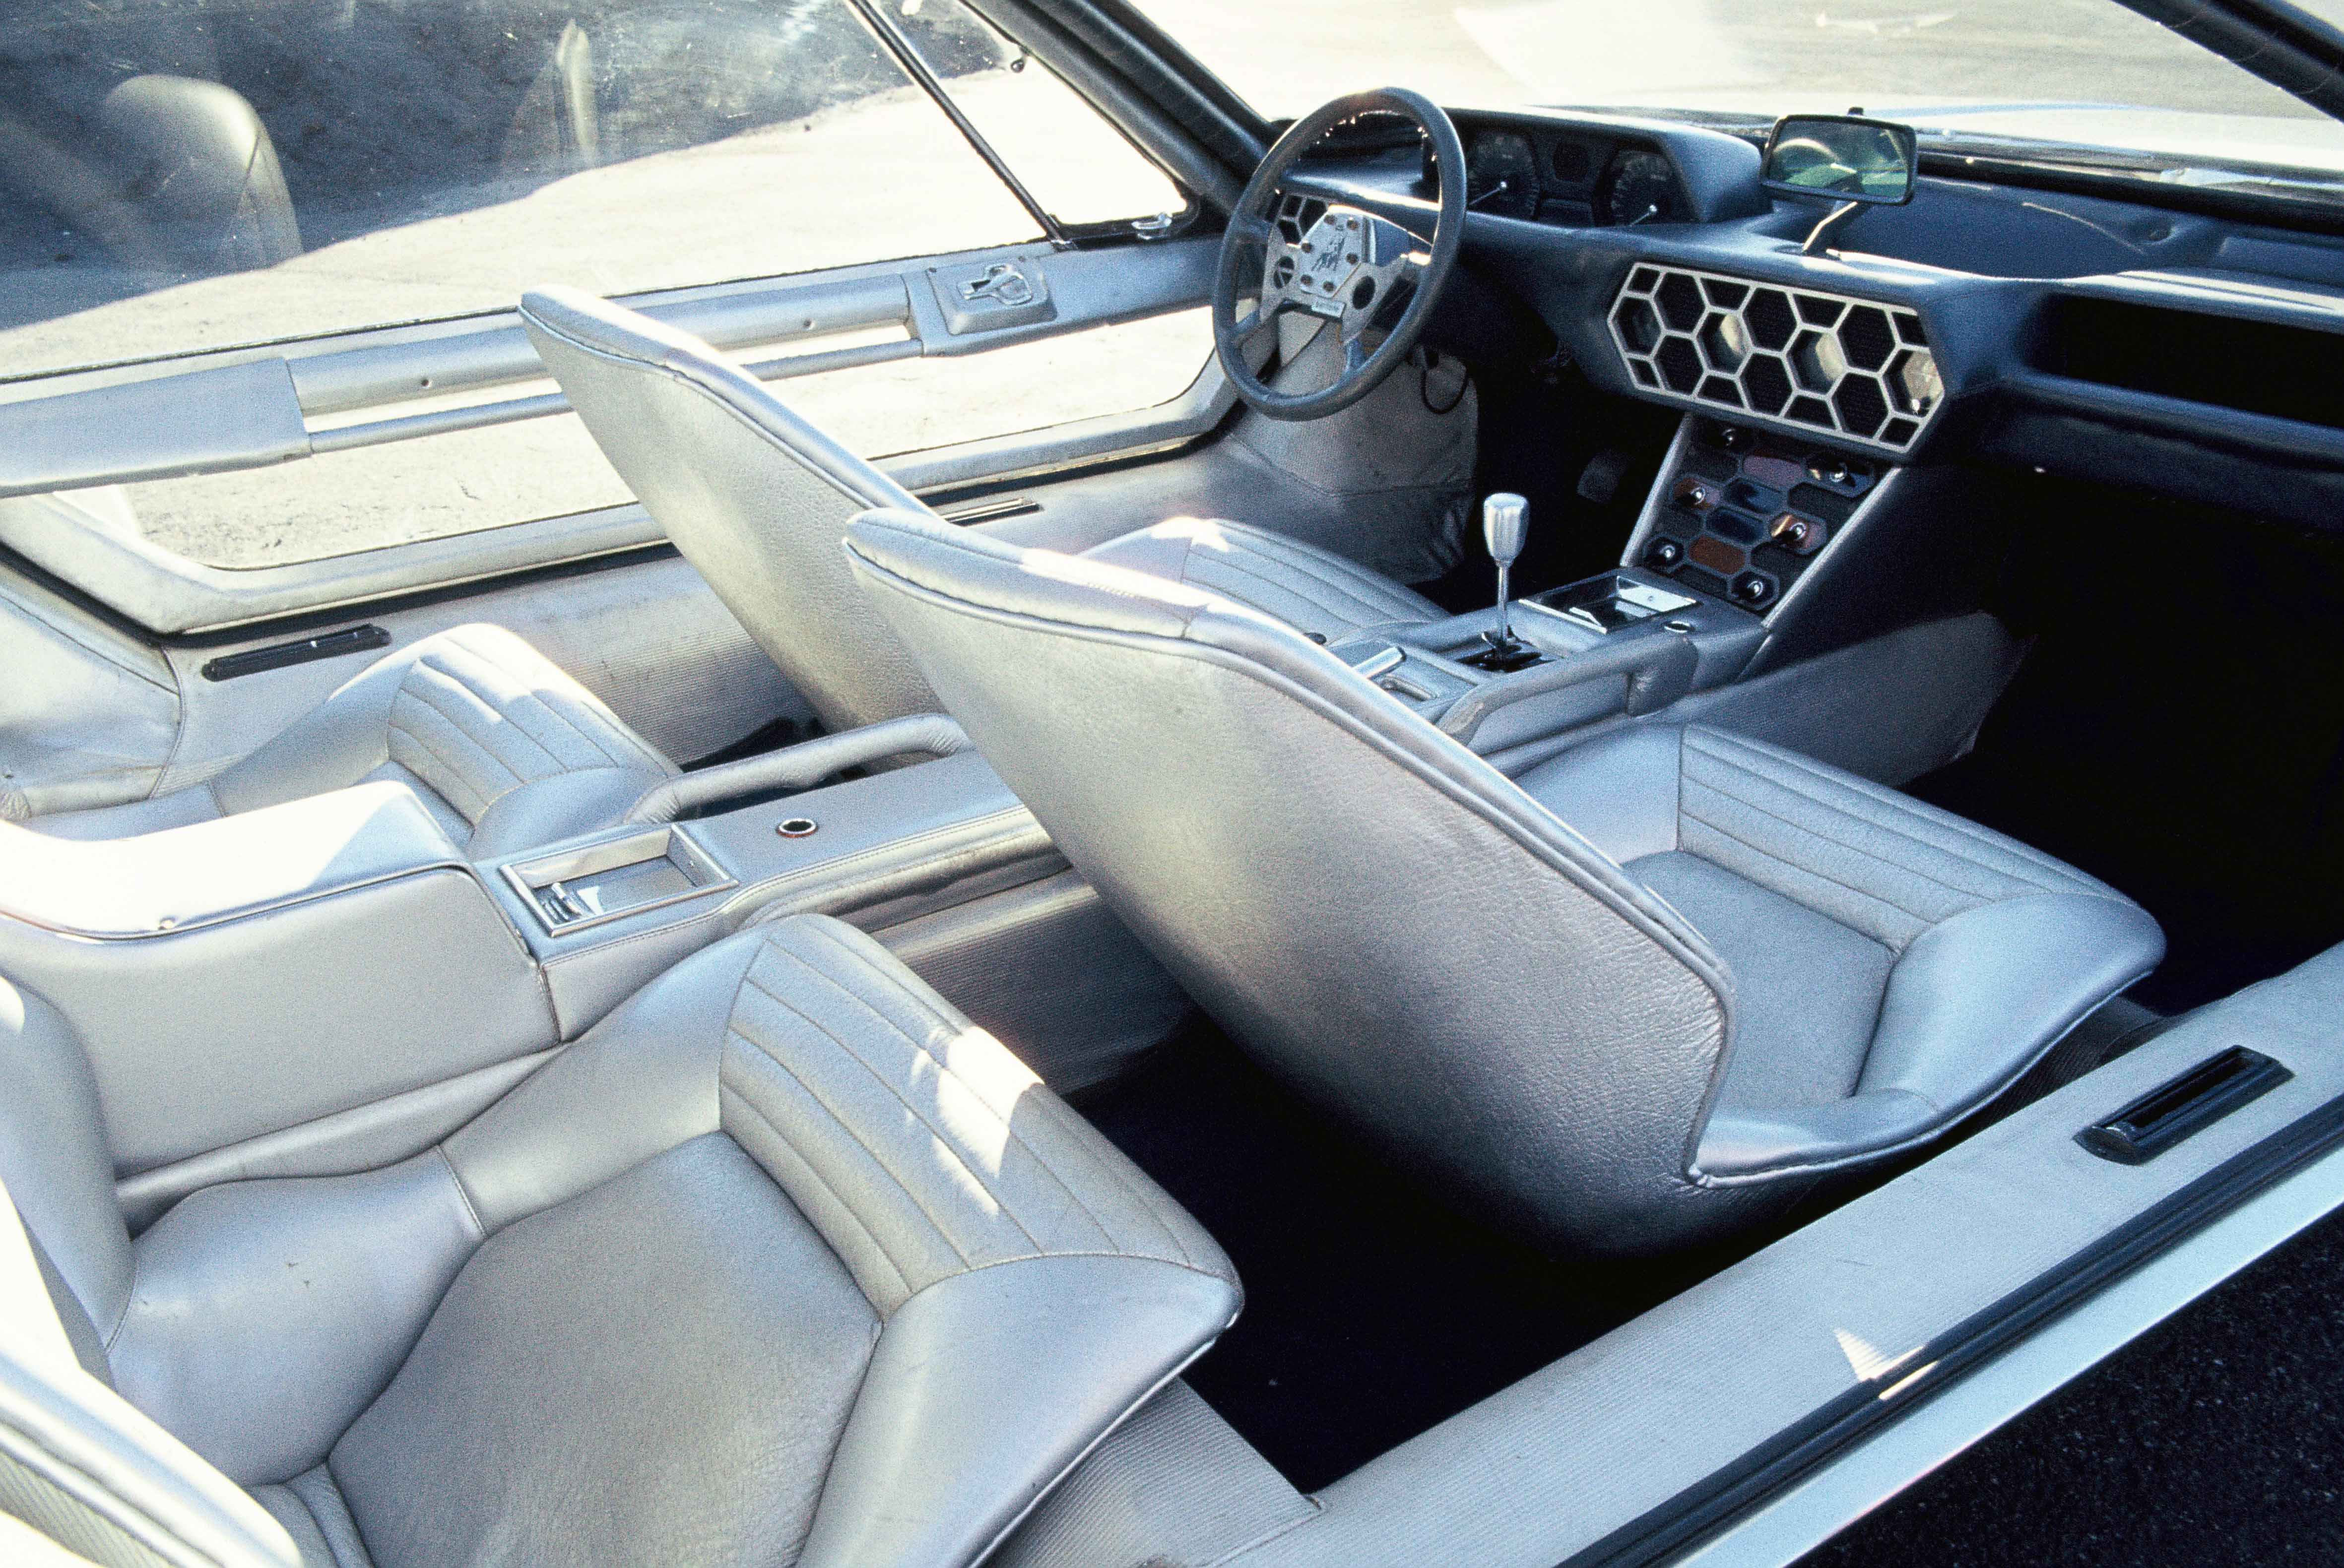 Lamborghini Marzal (Bertone), 1967 - Interior